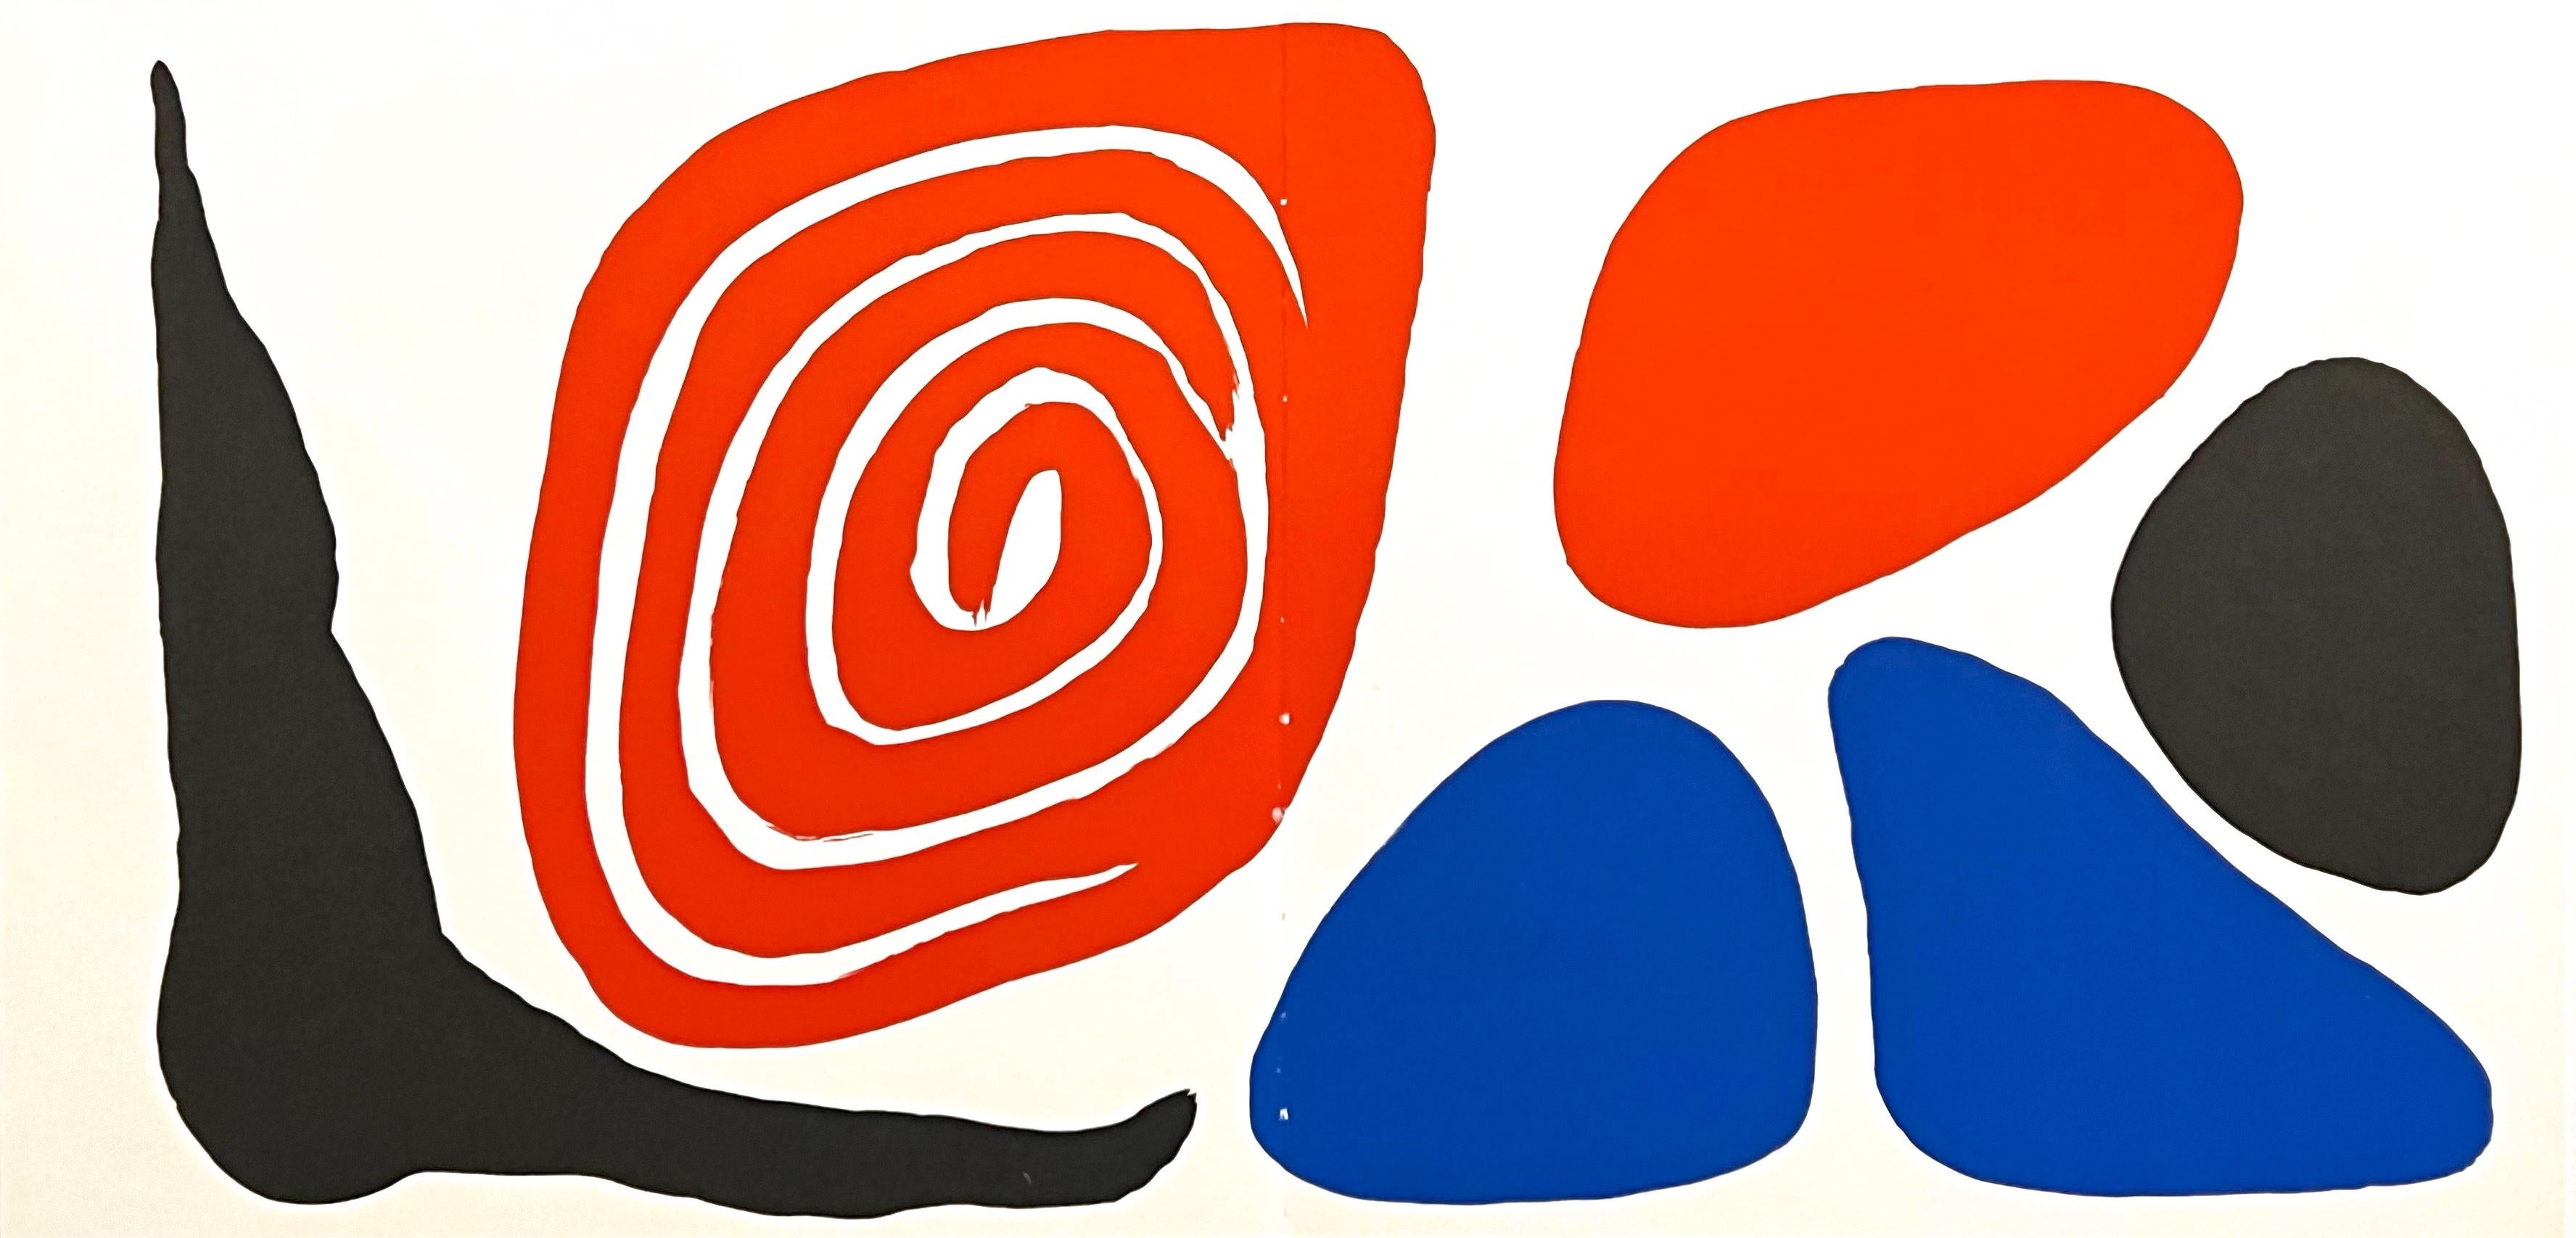 Abstract Print Alexander Calder - Calder, Composition, Autobiographie/Traduction, 1972 (après)